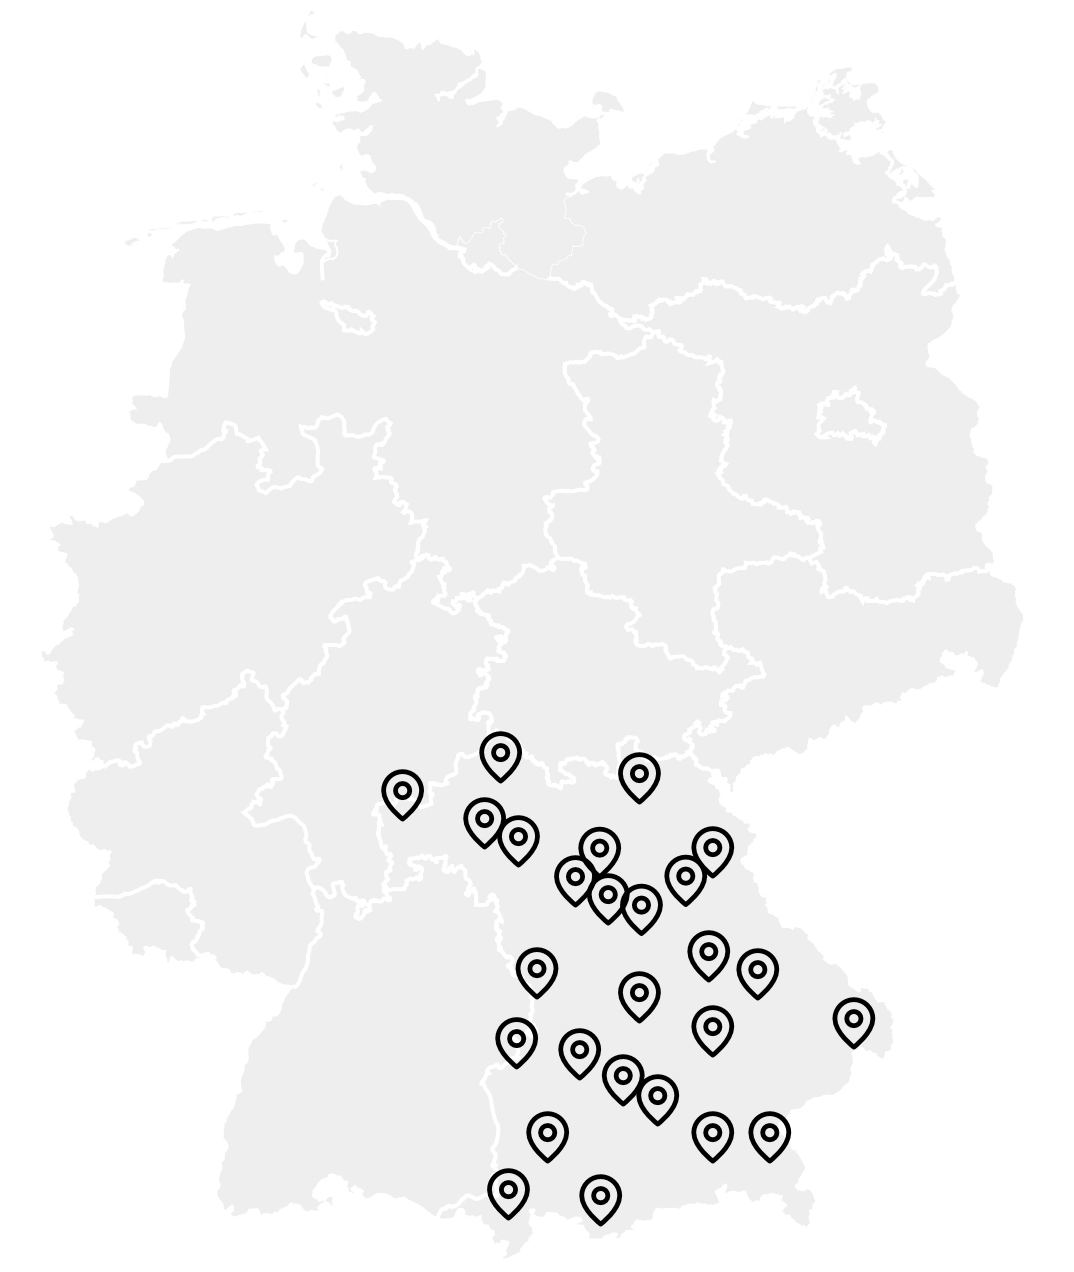 DE map